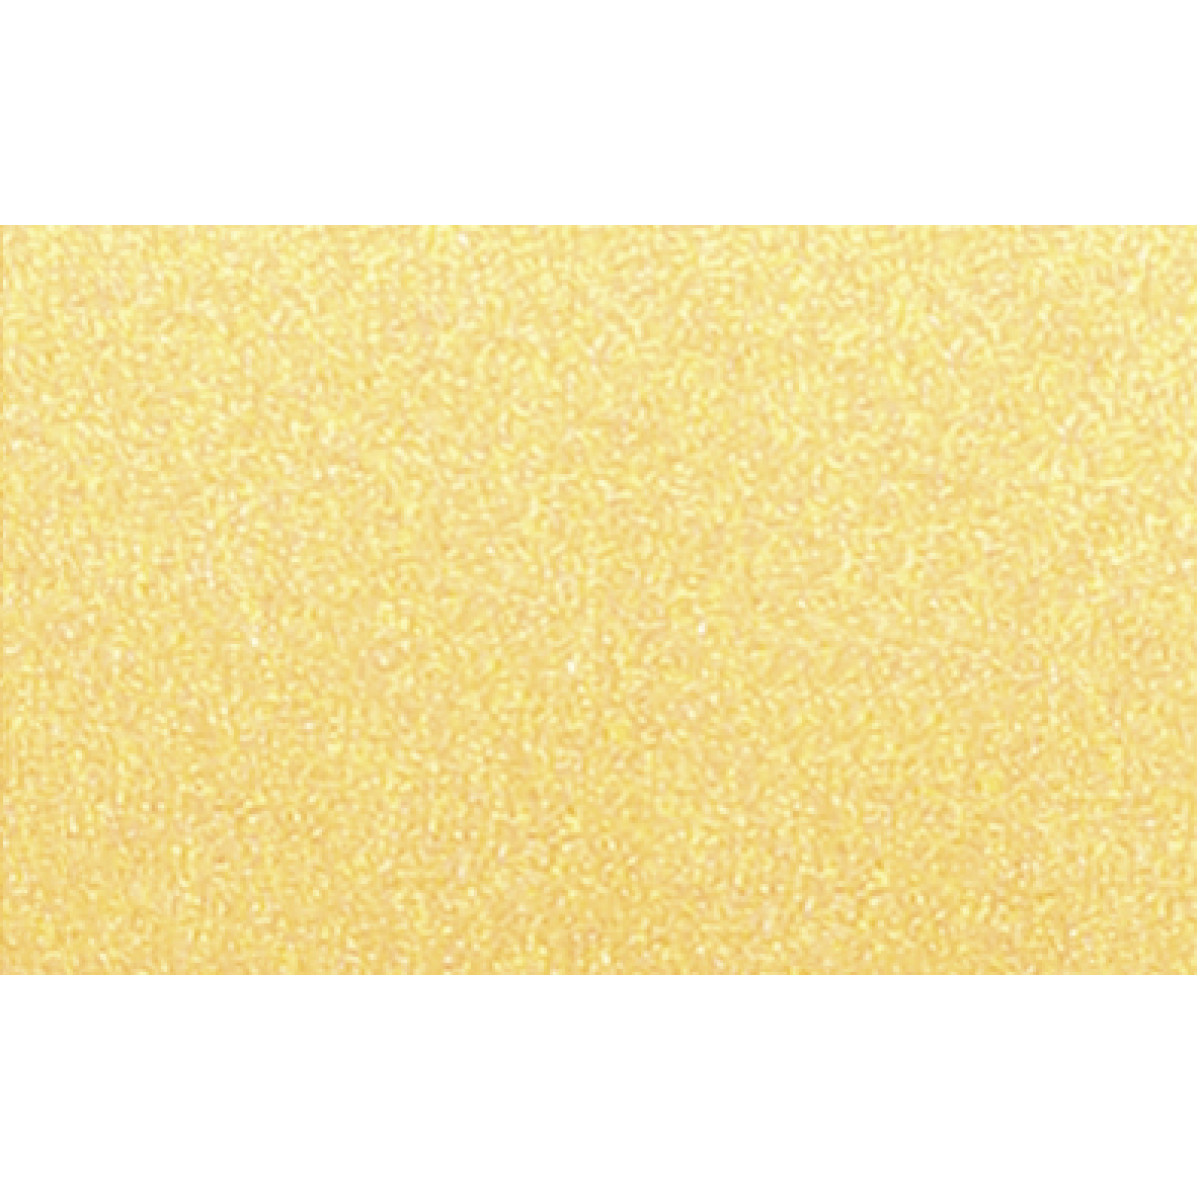 Grußkarten-Set "Starlight" 
quadratisch gold - 5 Stück